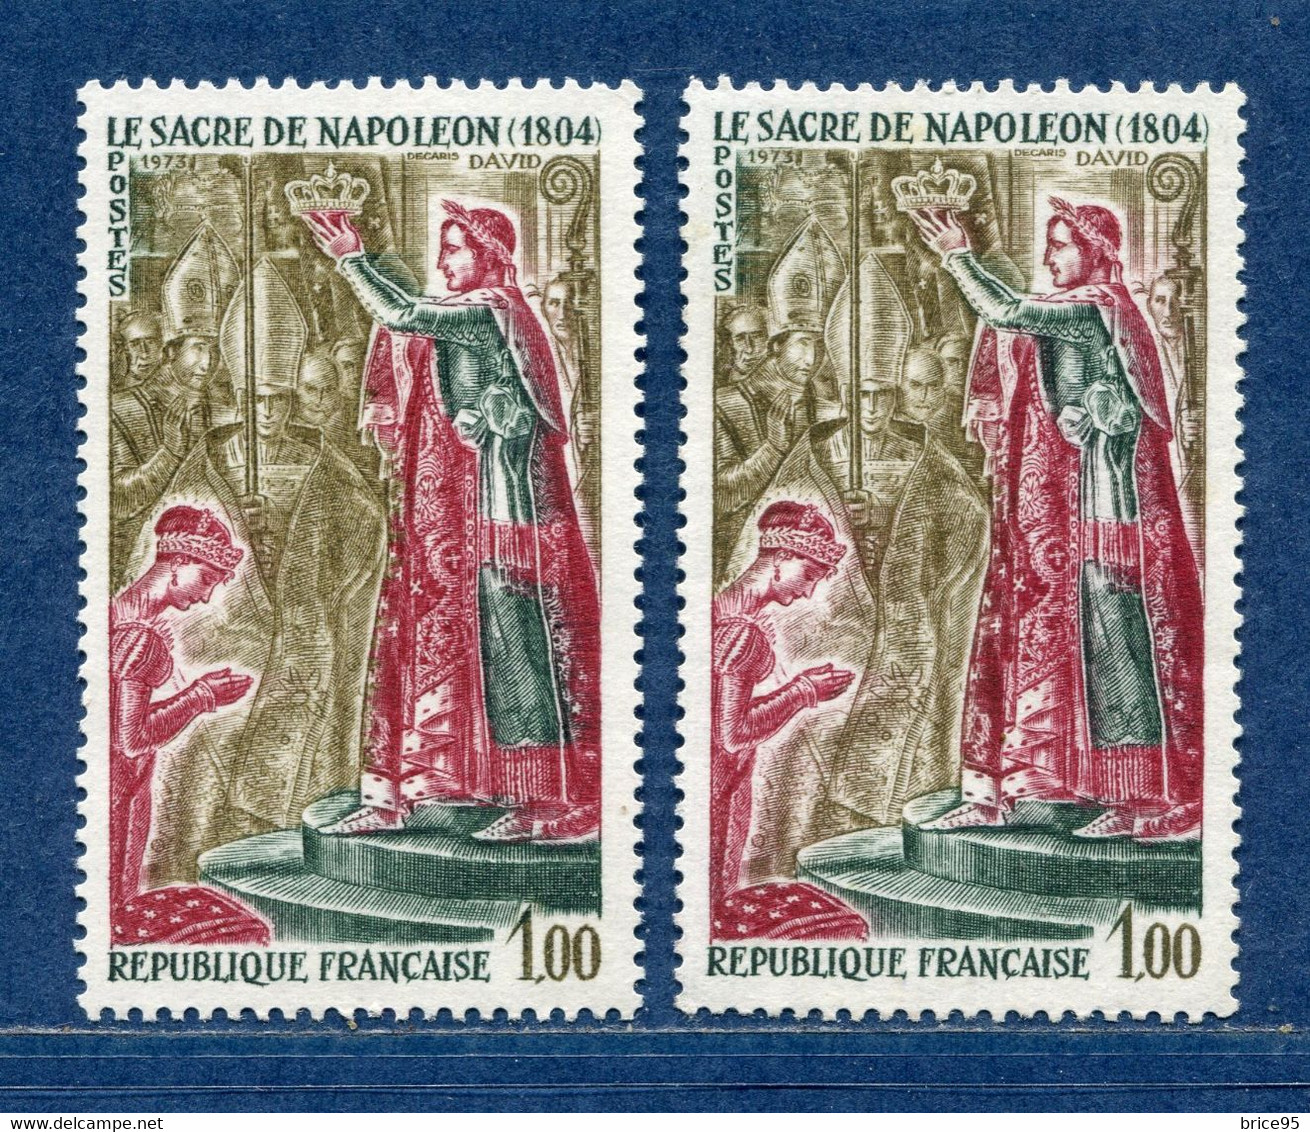 ⭐ France - Variété - YT N° 1776 - Couleurs - Pétouilles - Neuf Sans Charnière - 1973 ⭐ - Unused Stamps